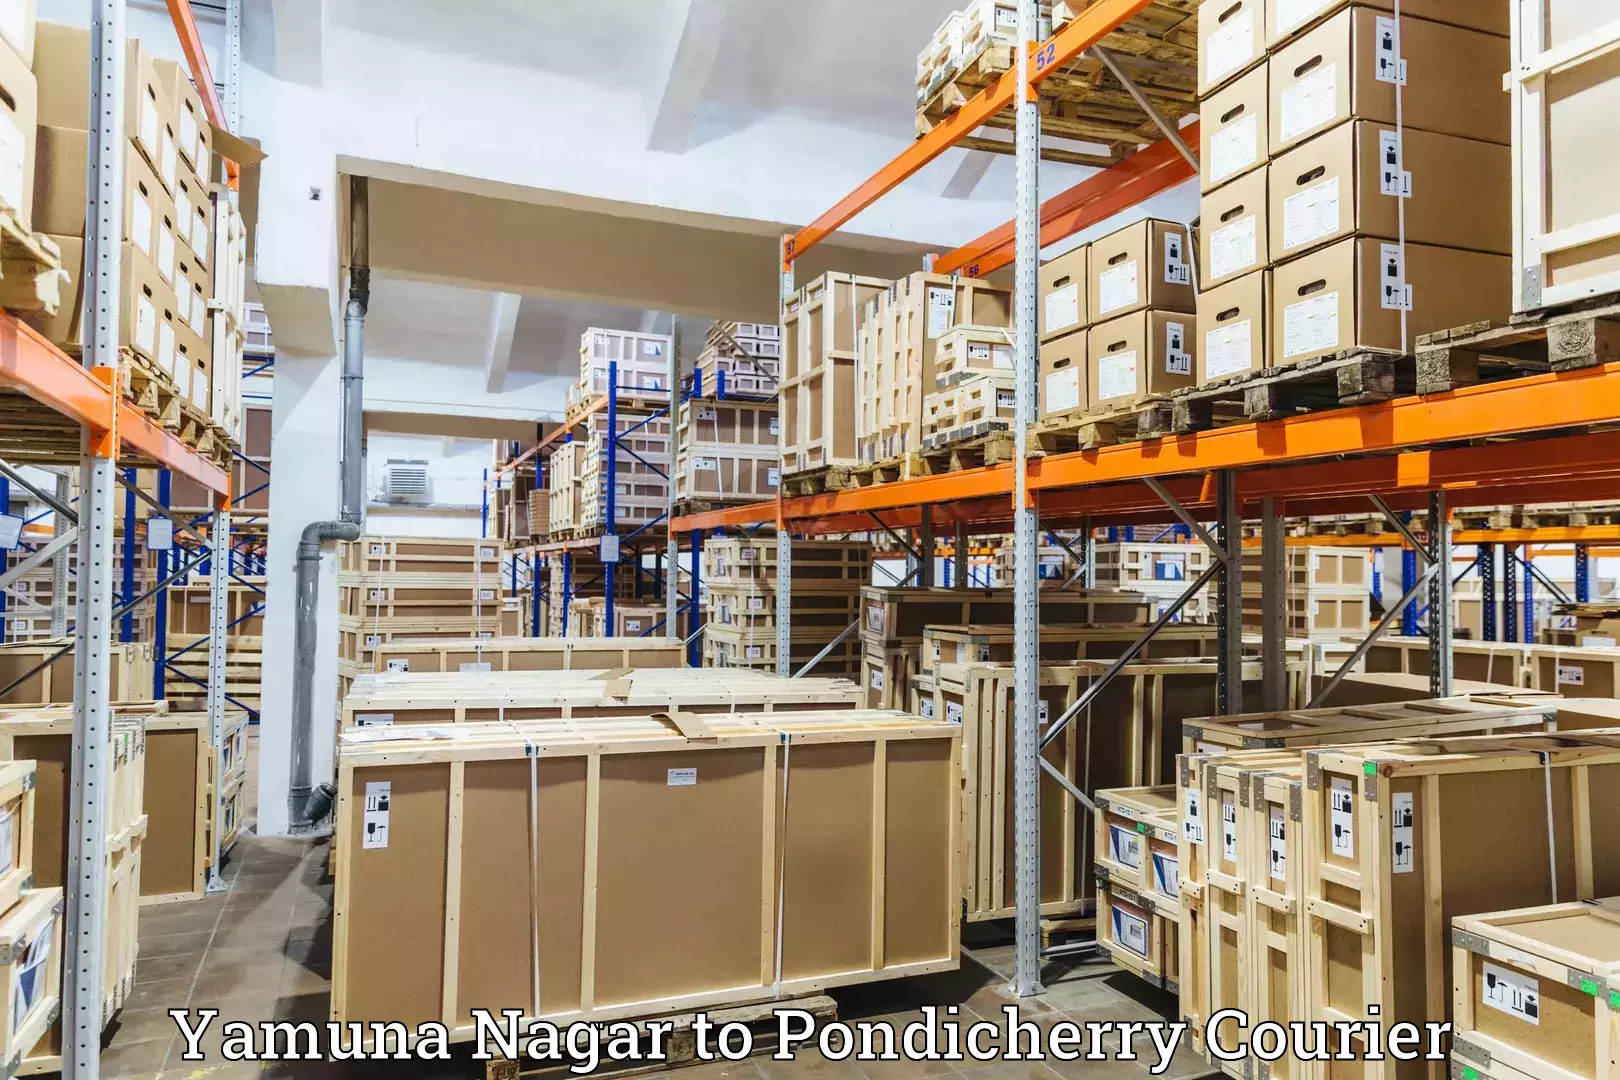 Customer-centric shipping Yamuna Nagar to Pondicherry